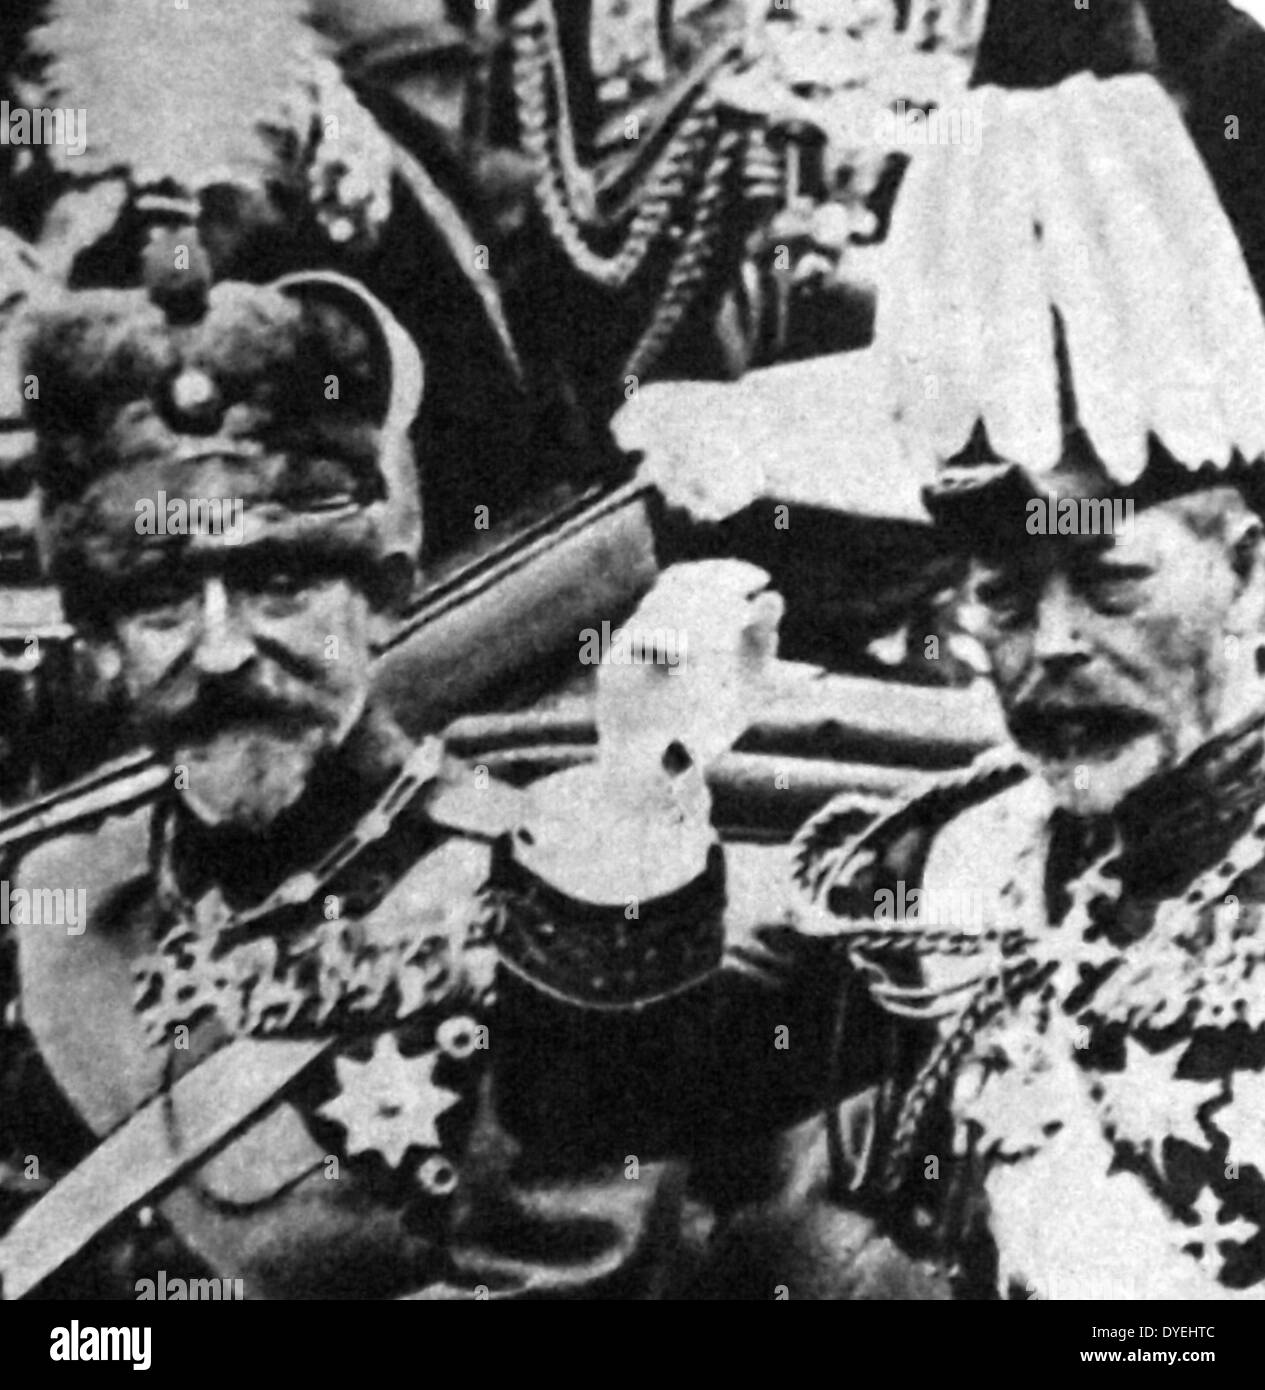 Ferdinando I (24 agosto 1865 - 20 luglio 1927) era il re dei rumeni dal 10 ottobre 1914 fino alla sua morte nel 1927. visto qui a Londra con il re George V. Circa 1930 Foto Stock